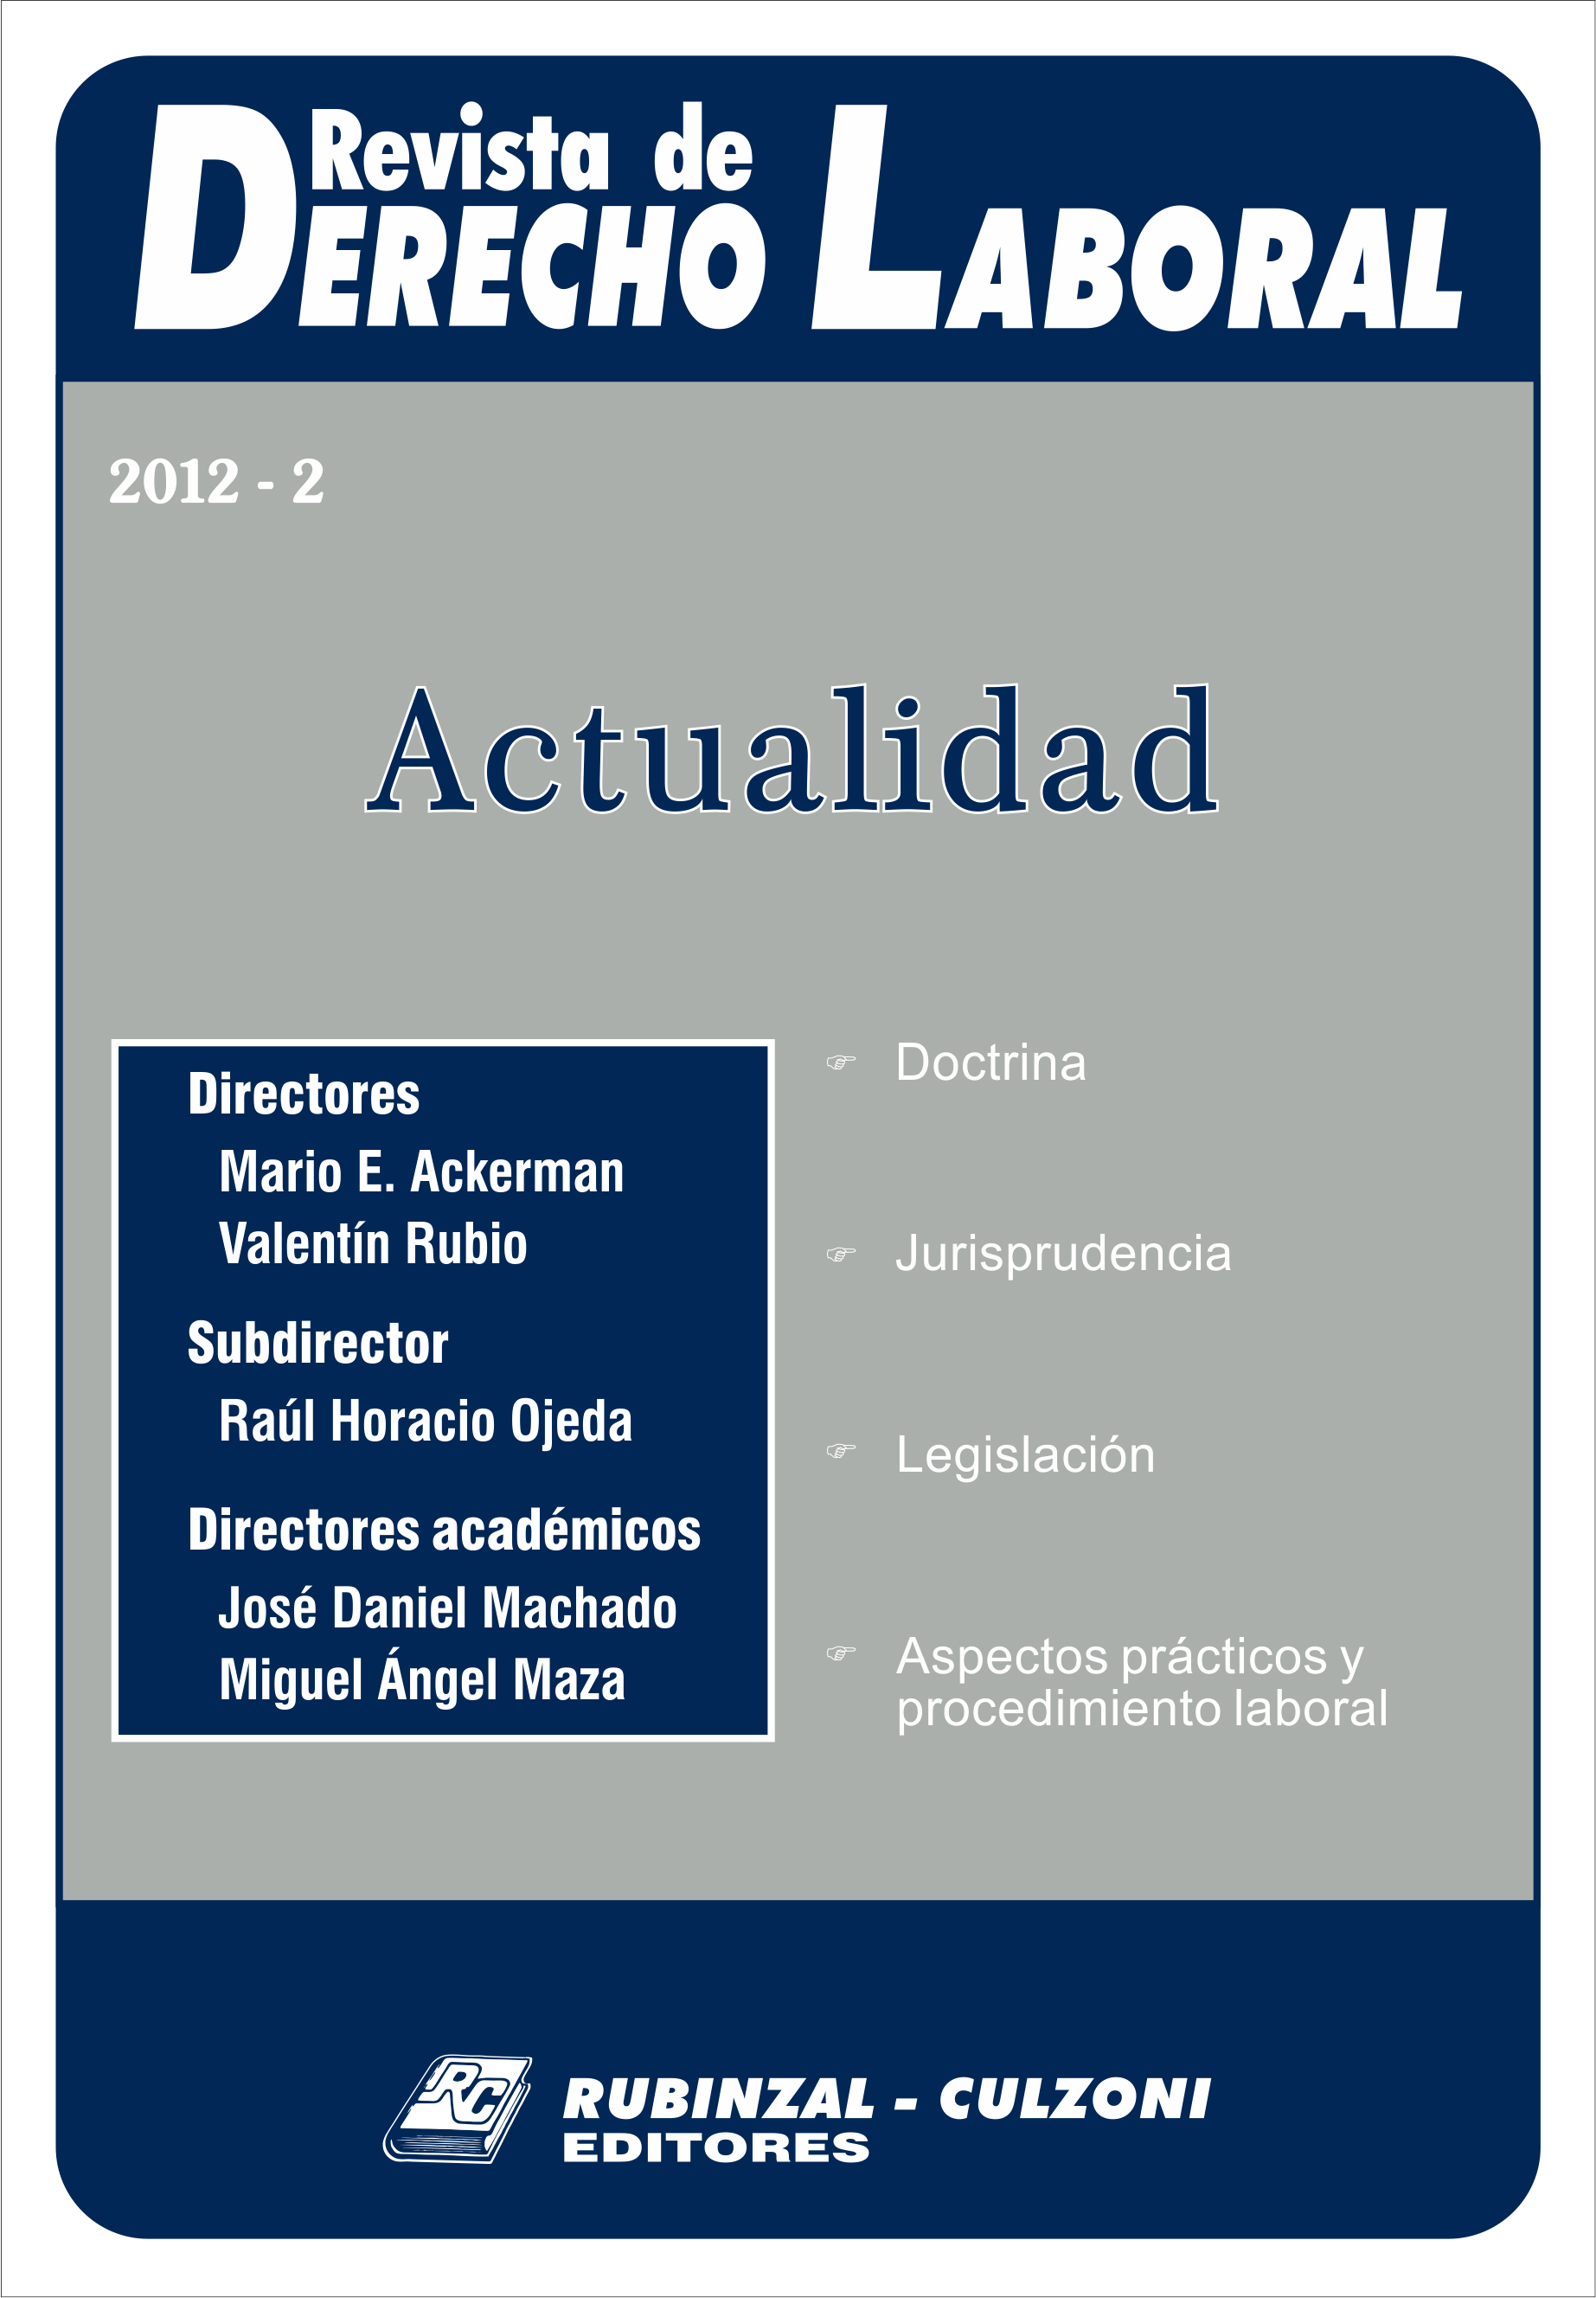 Revista de Derecho Laboral Actualidad - Año 2012 - 2.